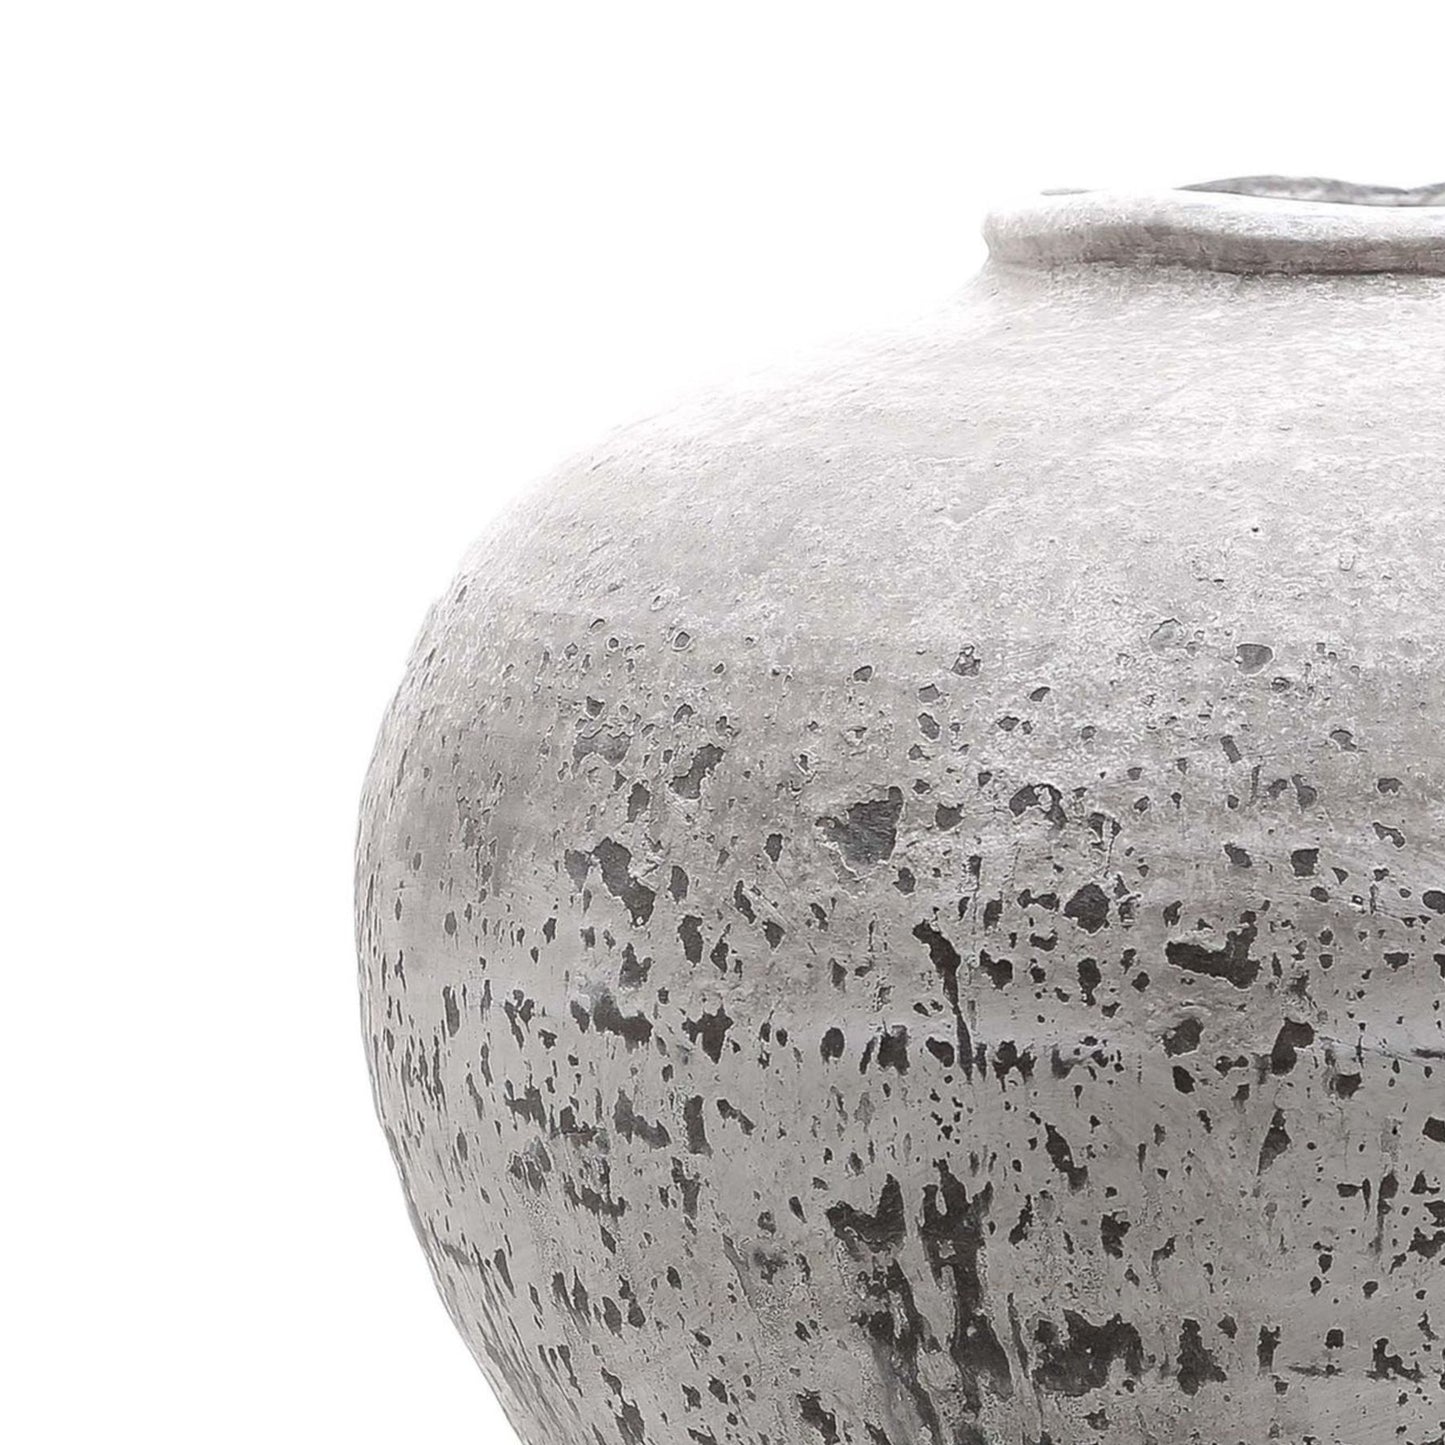 Regola Large Stone Ceramic Vase